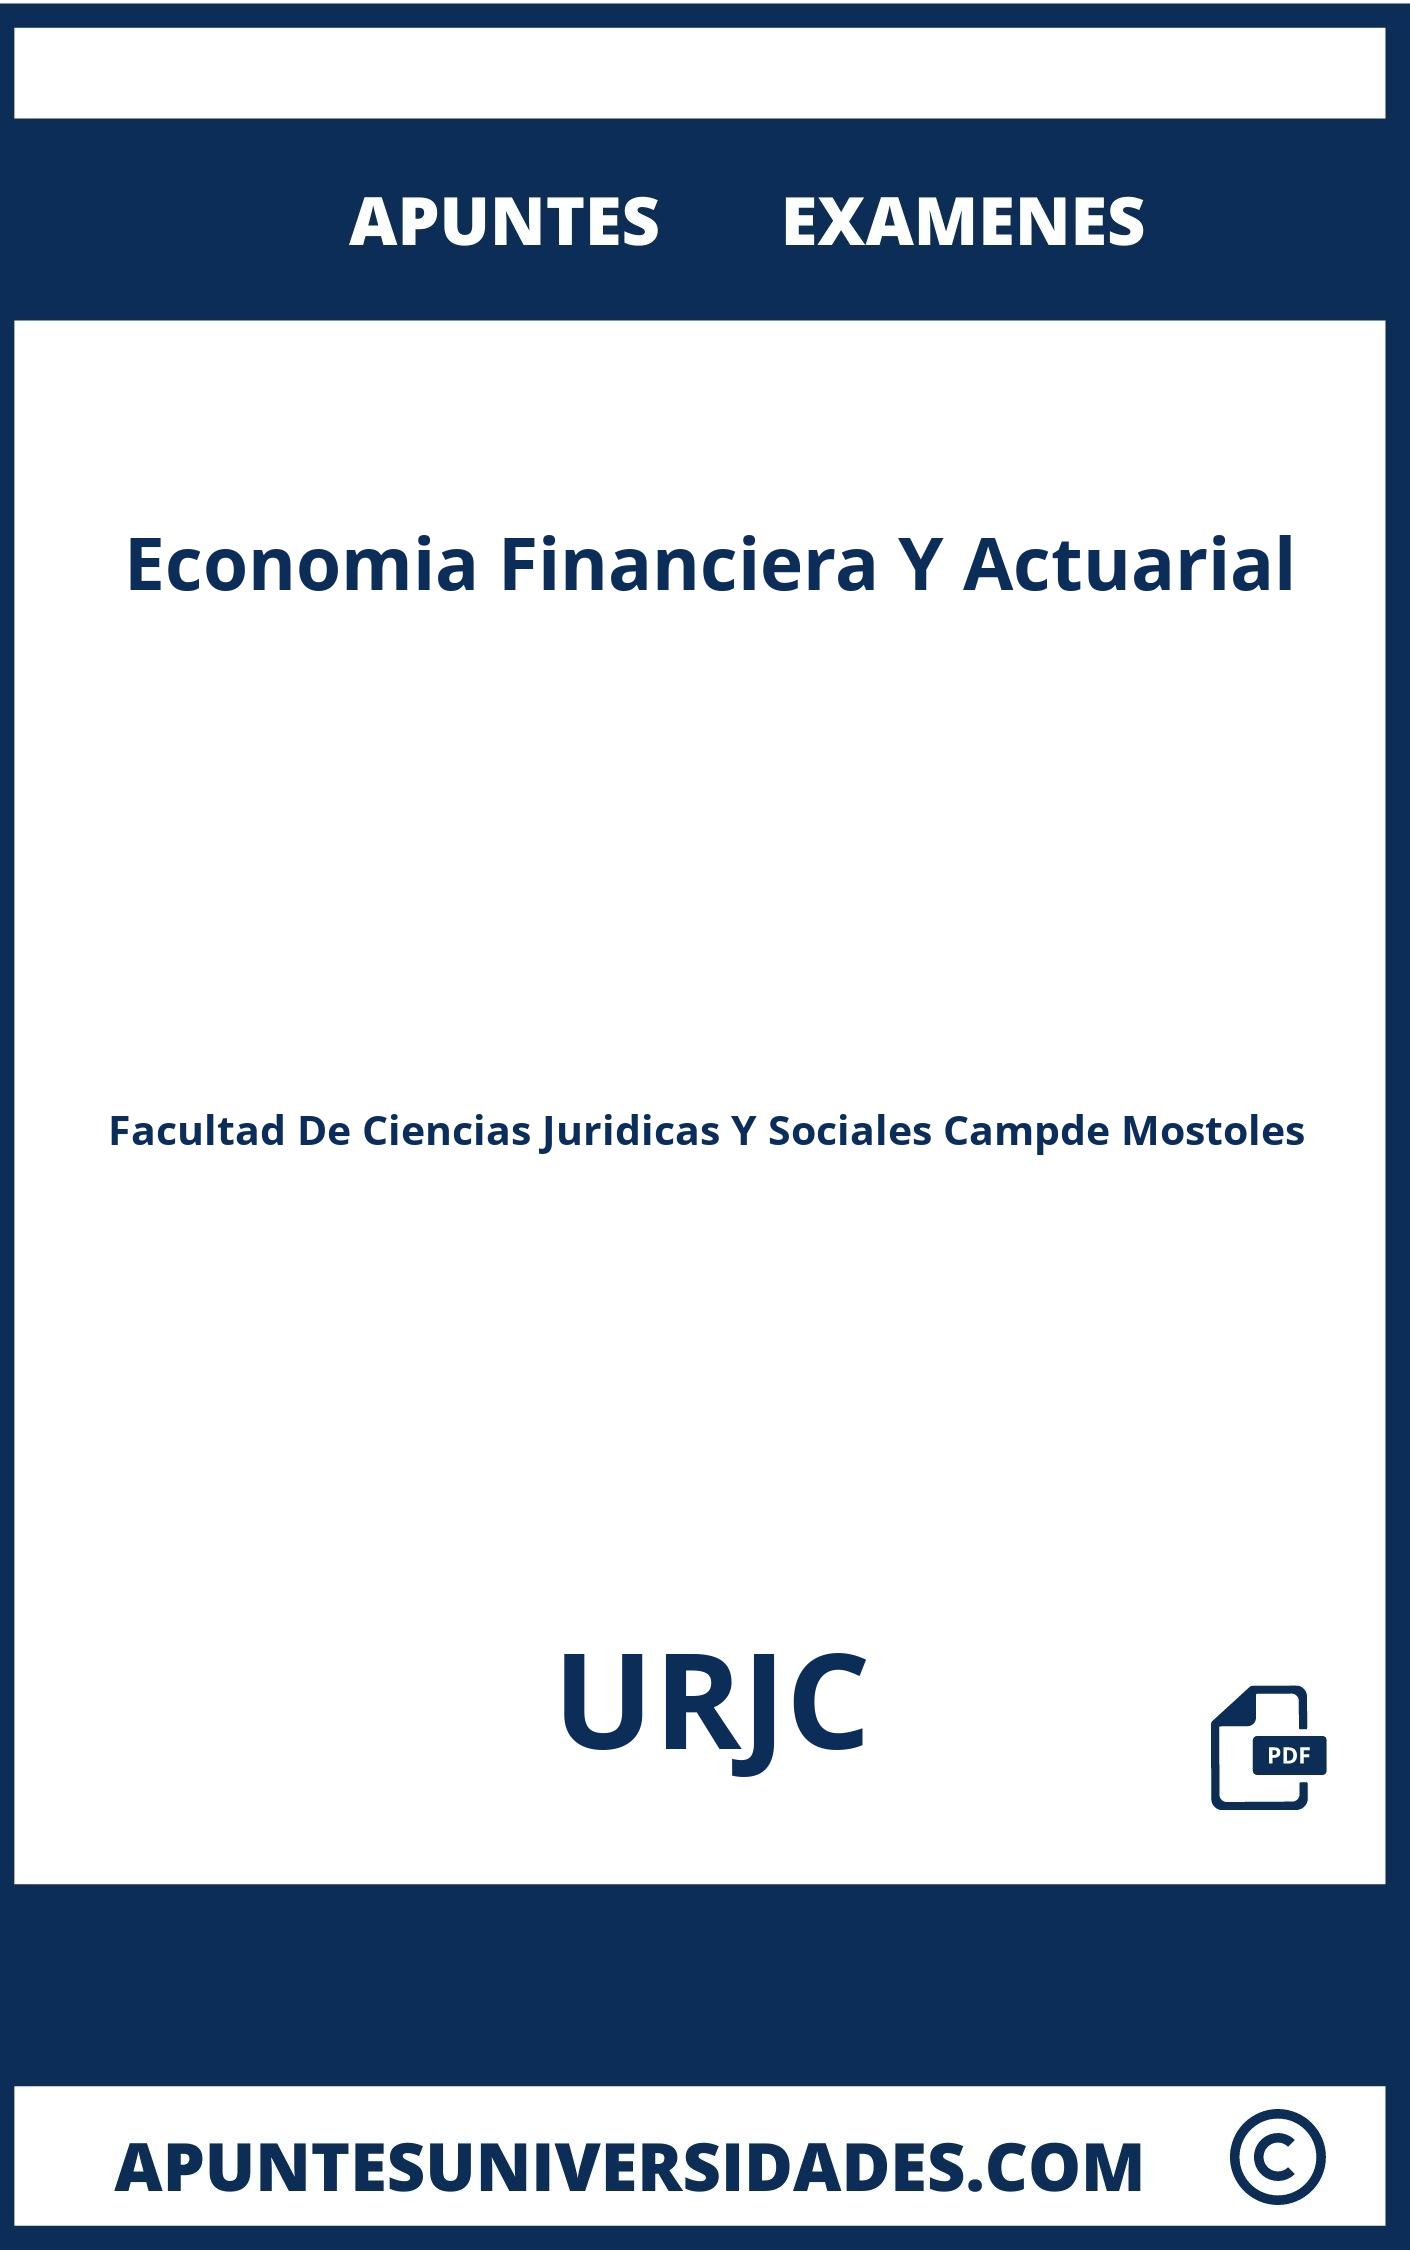 Examenes Apuntes Economia Financiera Y Actuarial URJC